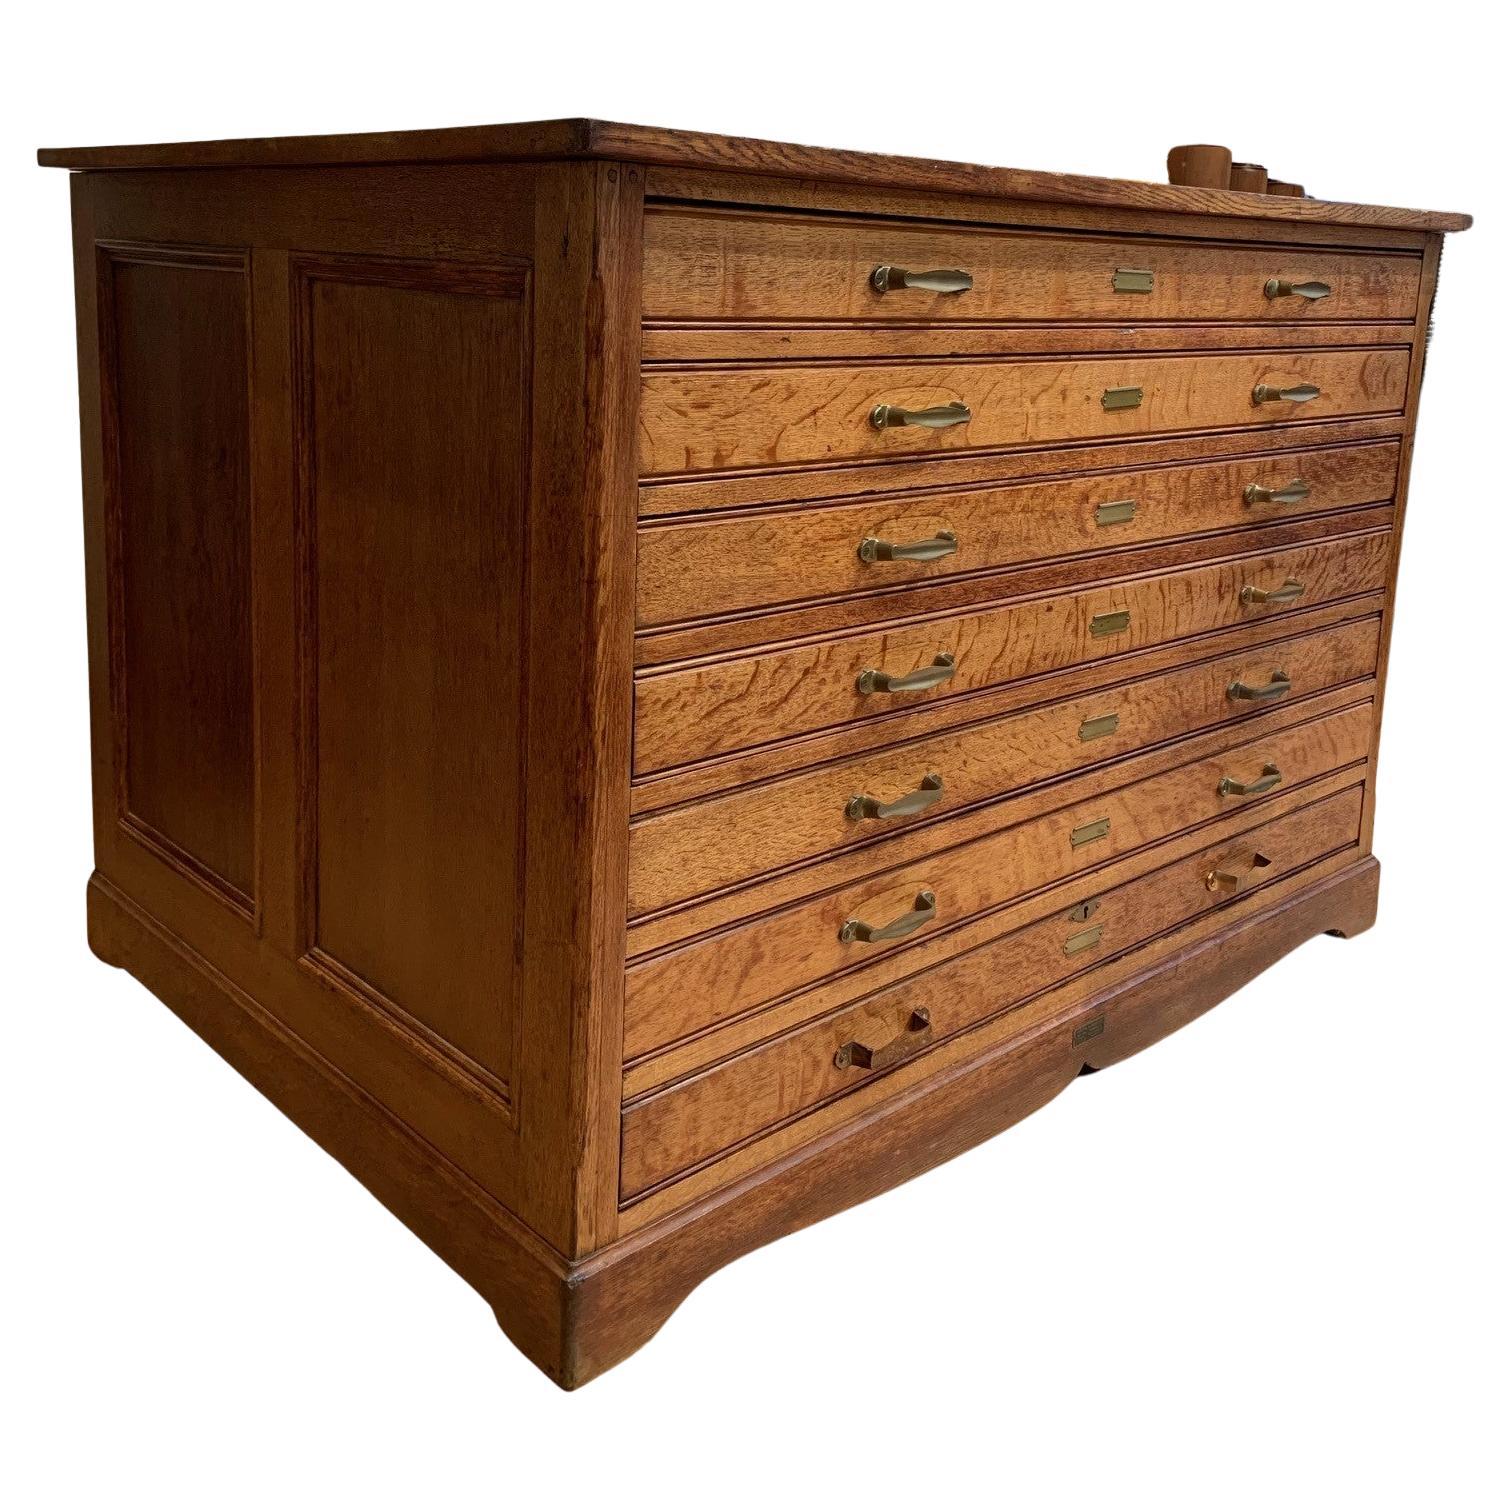 American Craftsman Antique Oak Flat File Cabinet by Keuffel & Esser Co. America, circa 1910